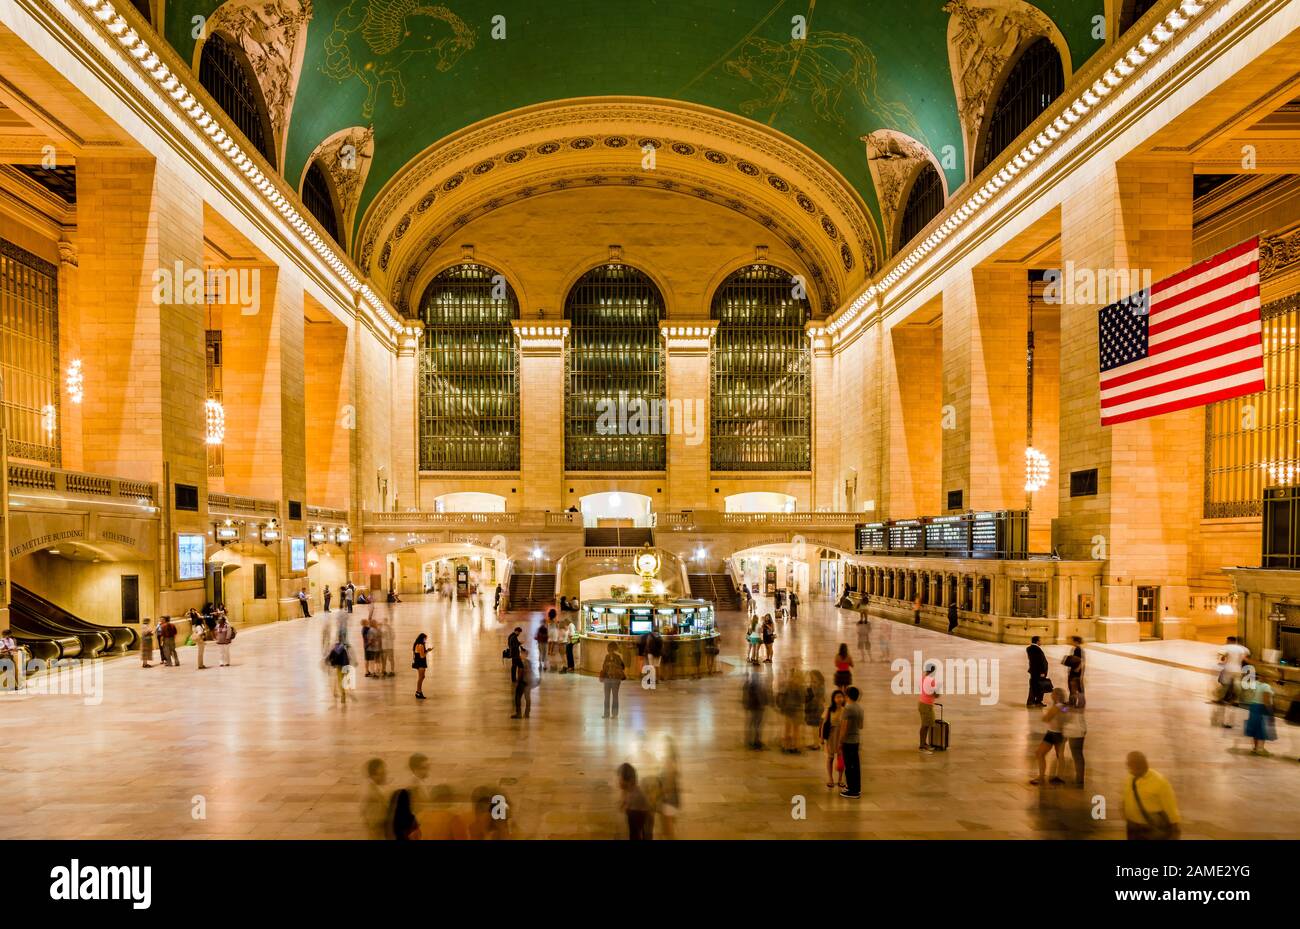 New York, NY / USA - 11 juillet 2014: Vue nocturne du Main Concourse de Grand Central terminal, l'un des monuments les plus appréciés de Manhattan. Banque D'Images